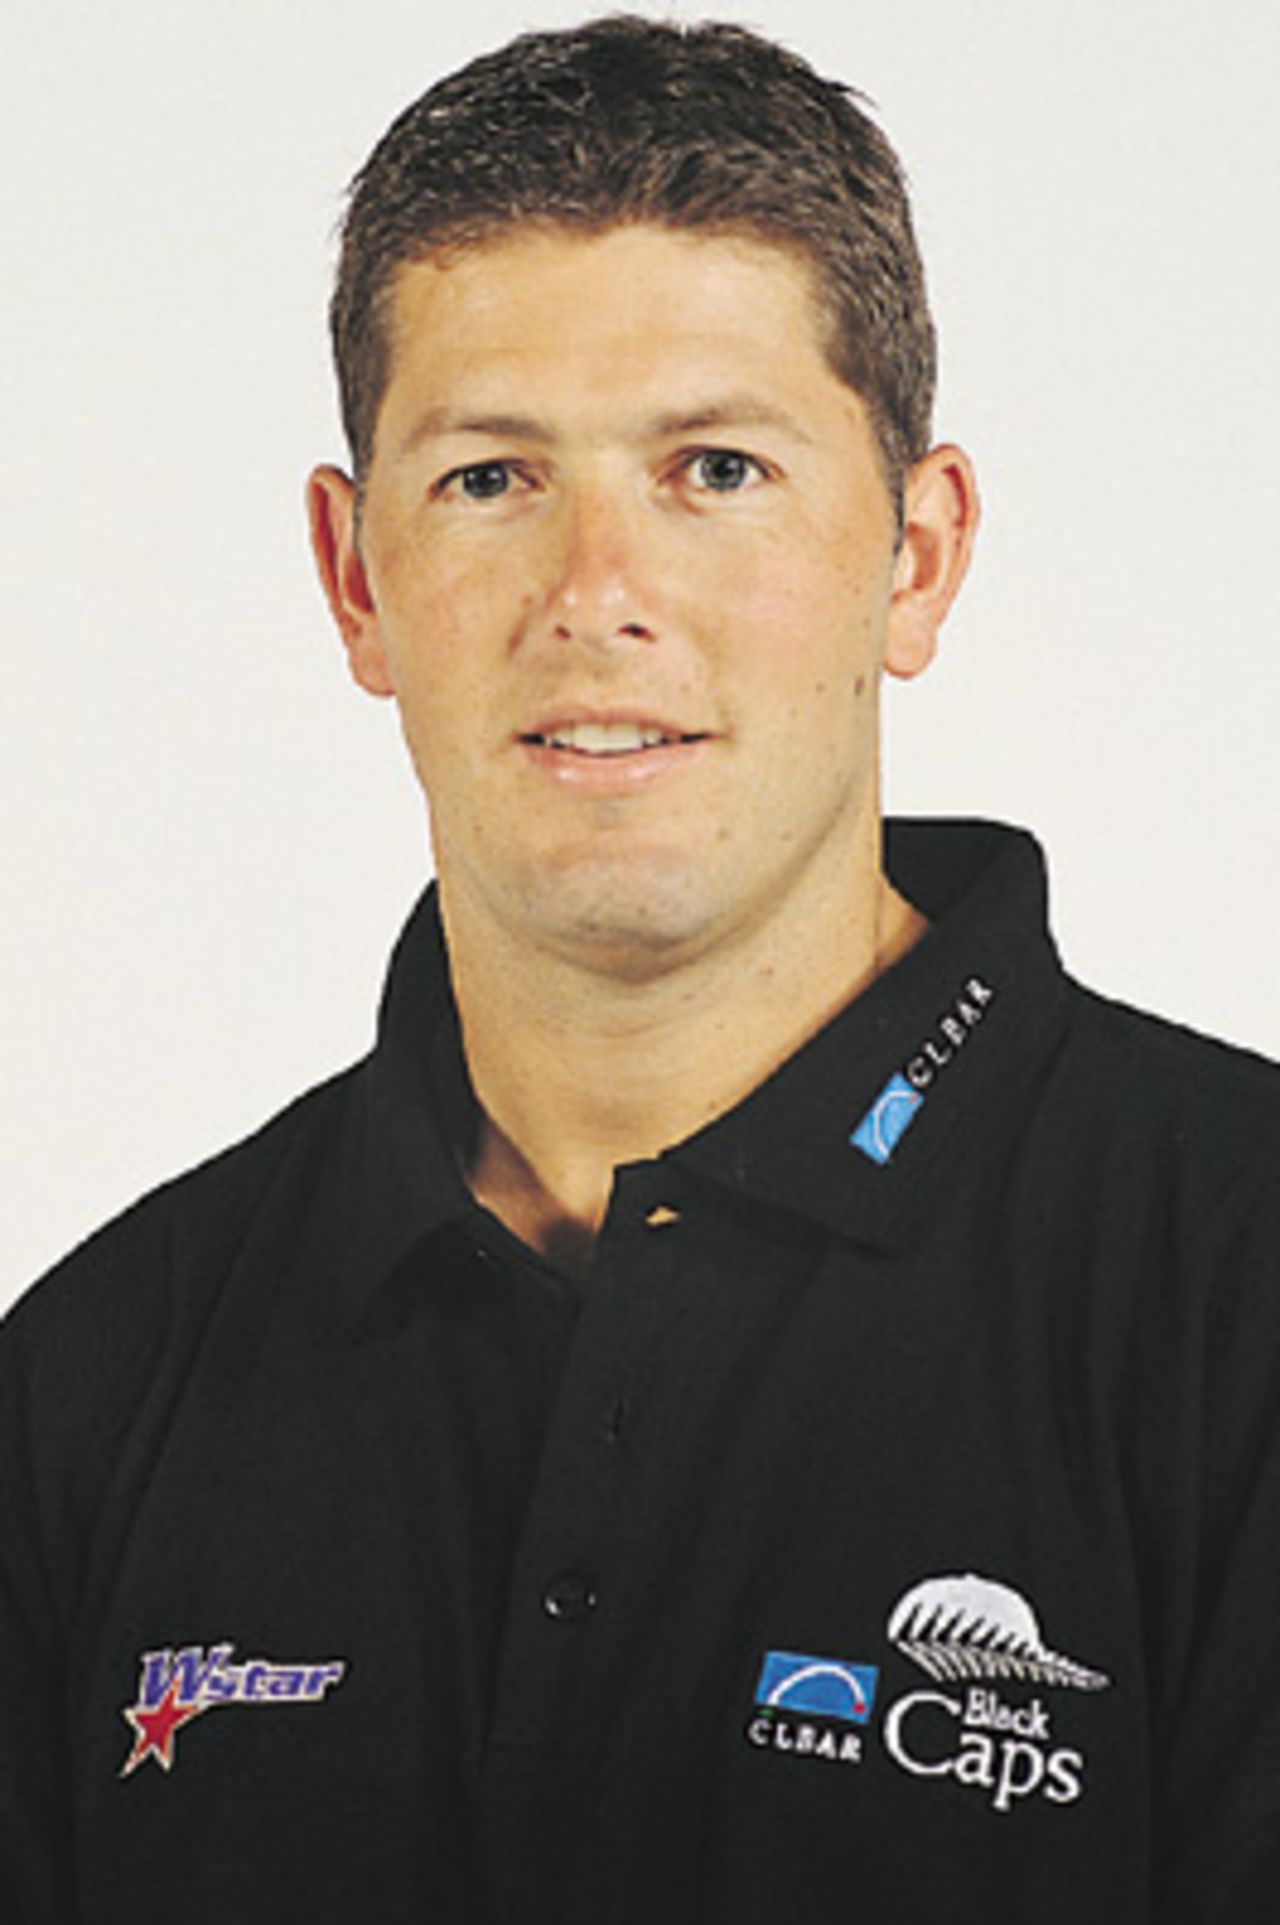 Portrait of Geoff Allott - New Zealand player in the 2000/01 season